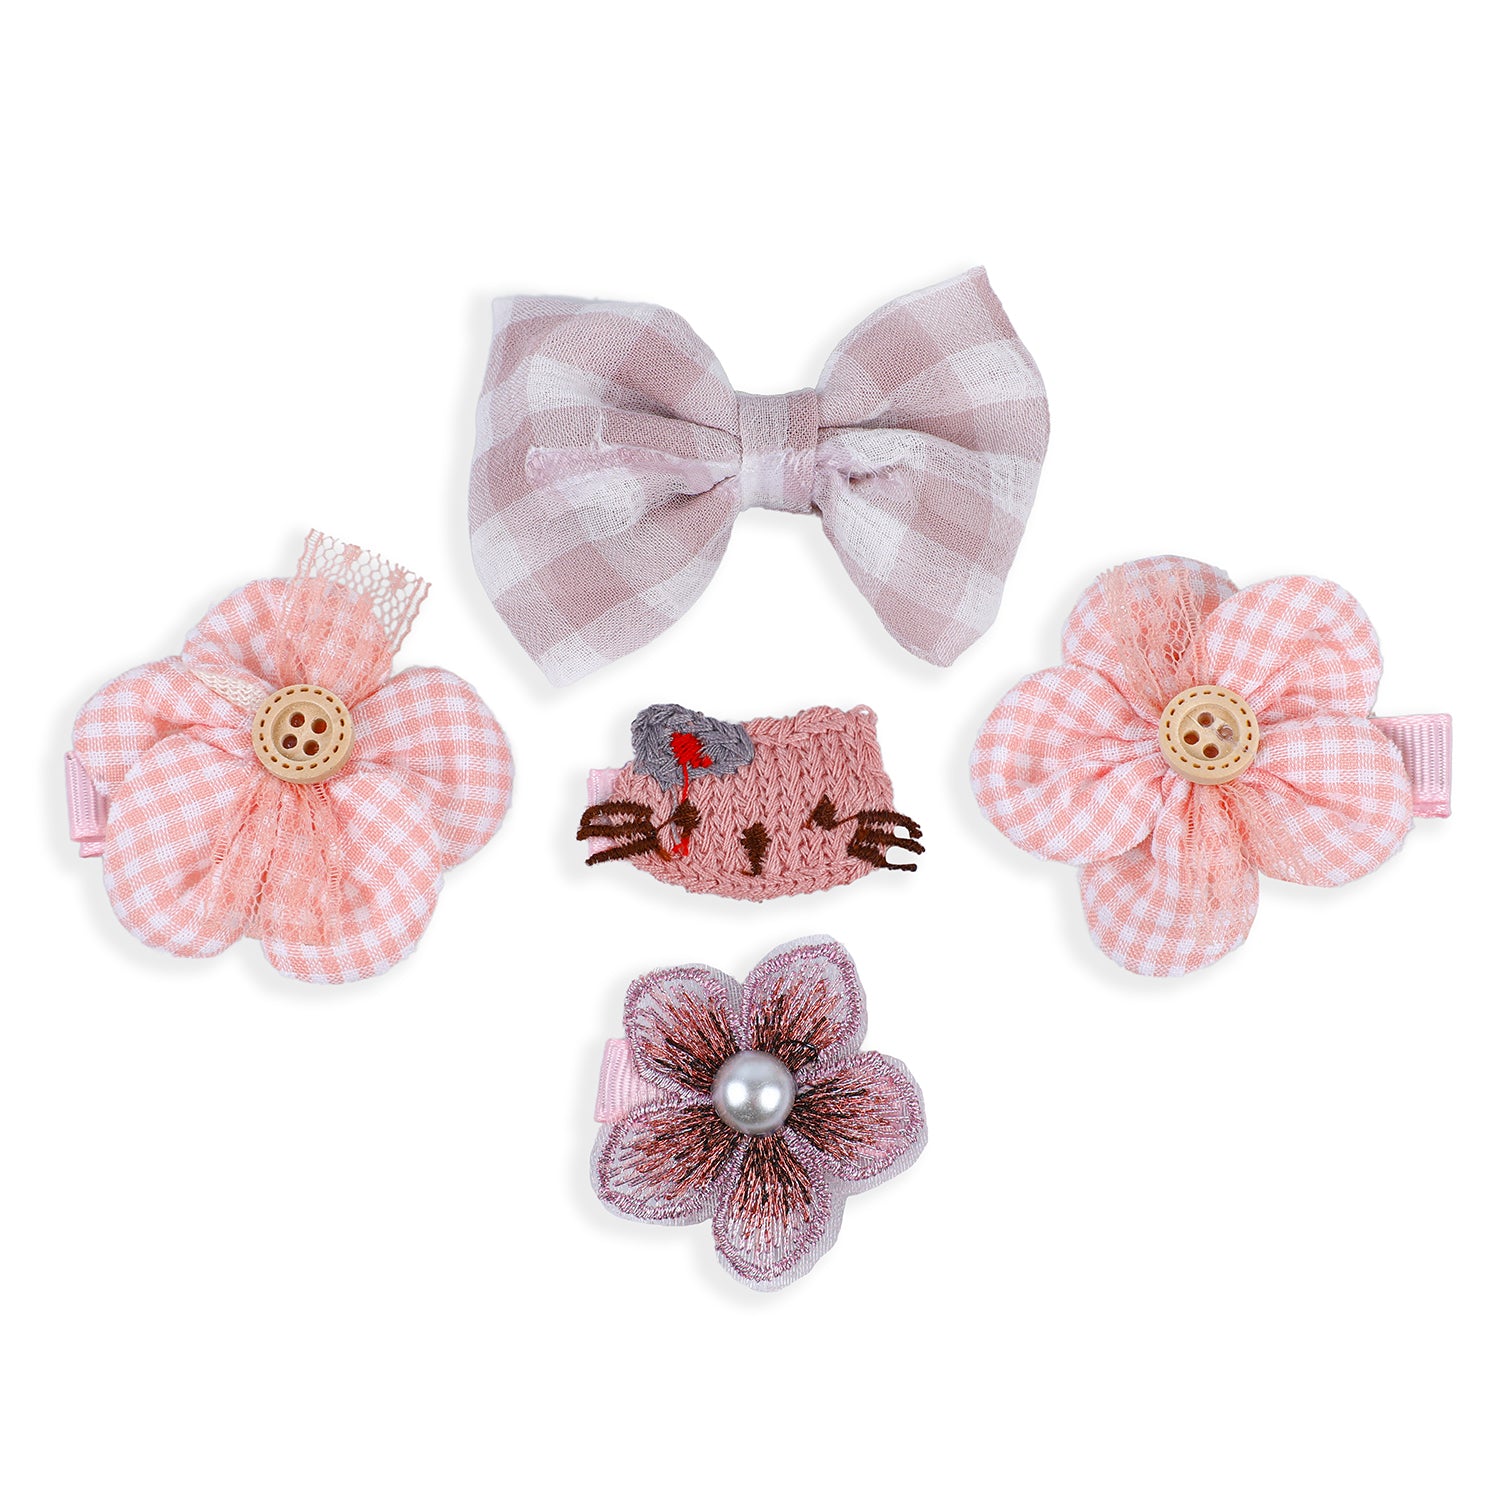 Rhea Floral Hair Clips Set 9 Pcs - Peach, Pink - Baby Moo